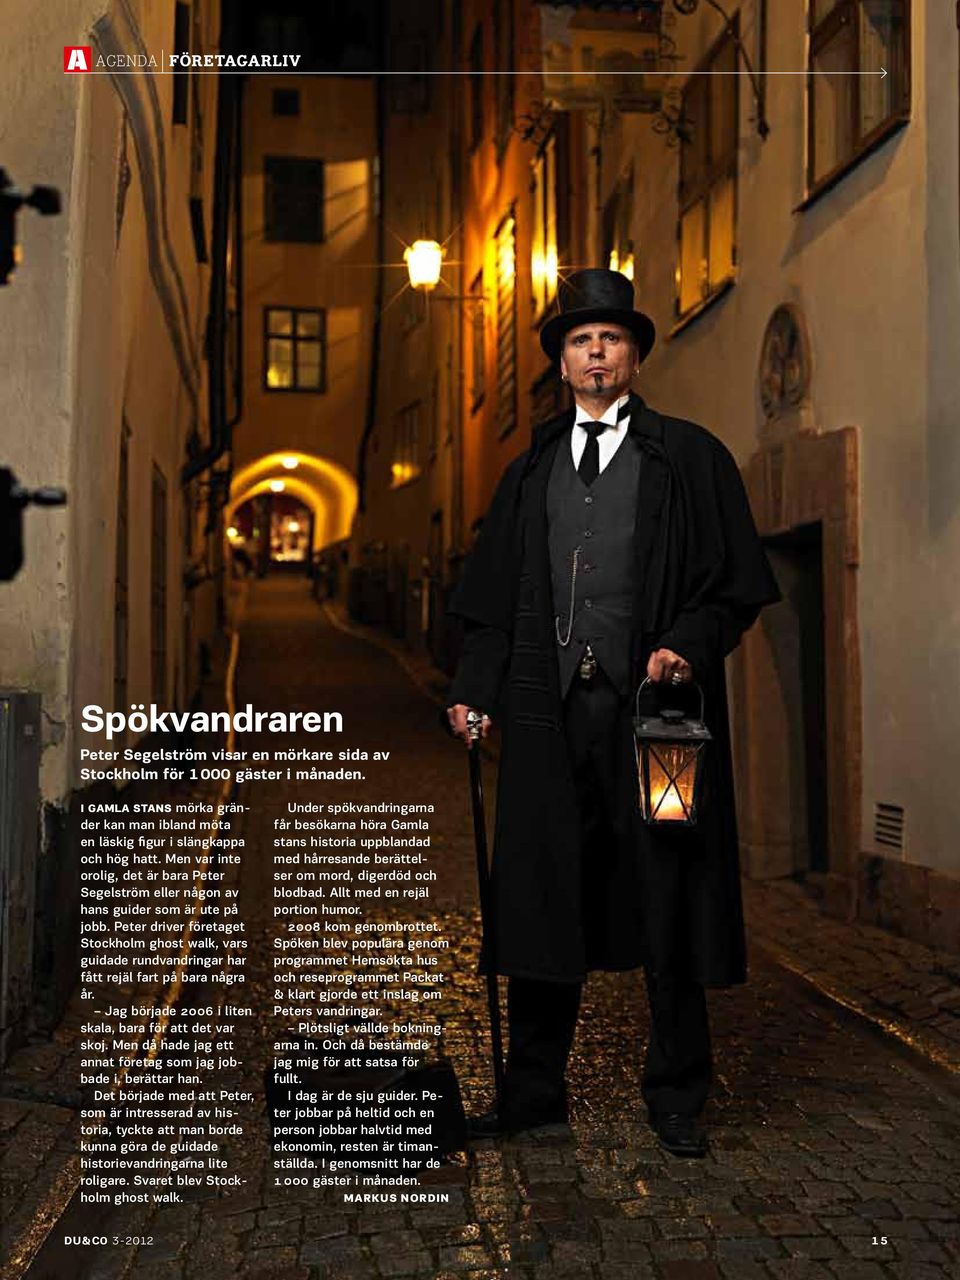 Peter driver företaget Stockholm ghost walk, vars guidade rundvandringar har fått rejäl fart på bara några år. Jag började 2006 i liten skala, bara för att det var skoj.